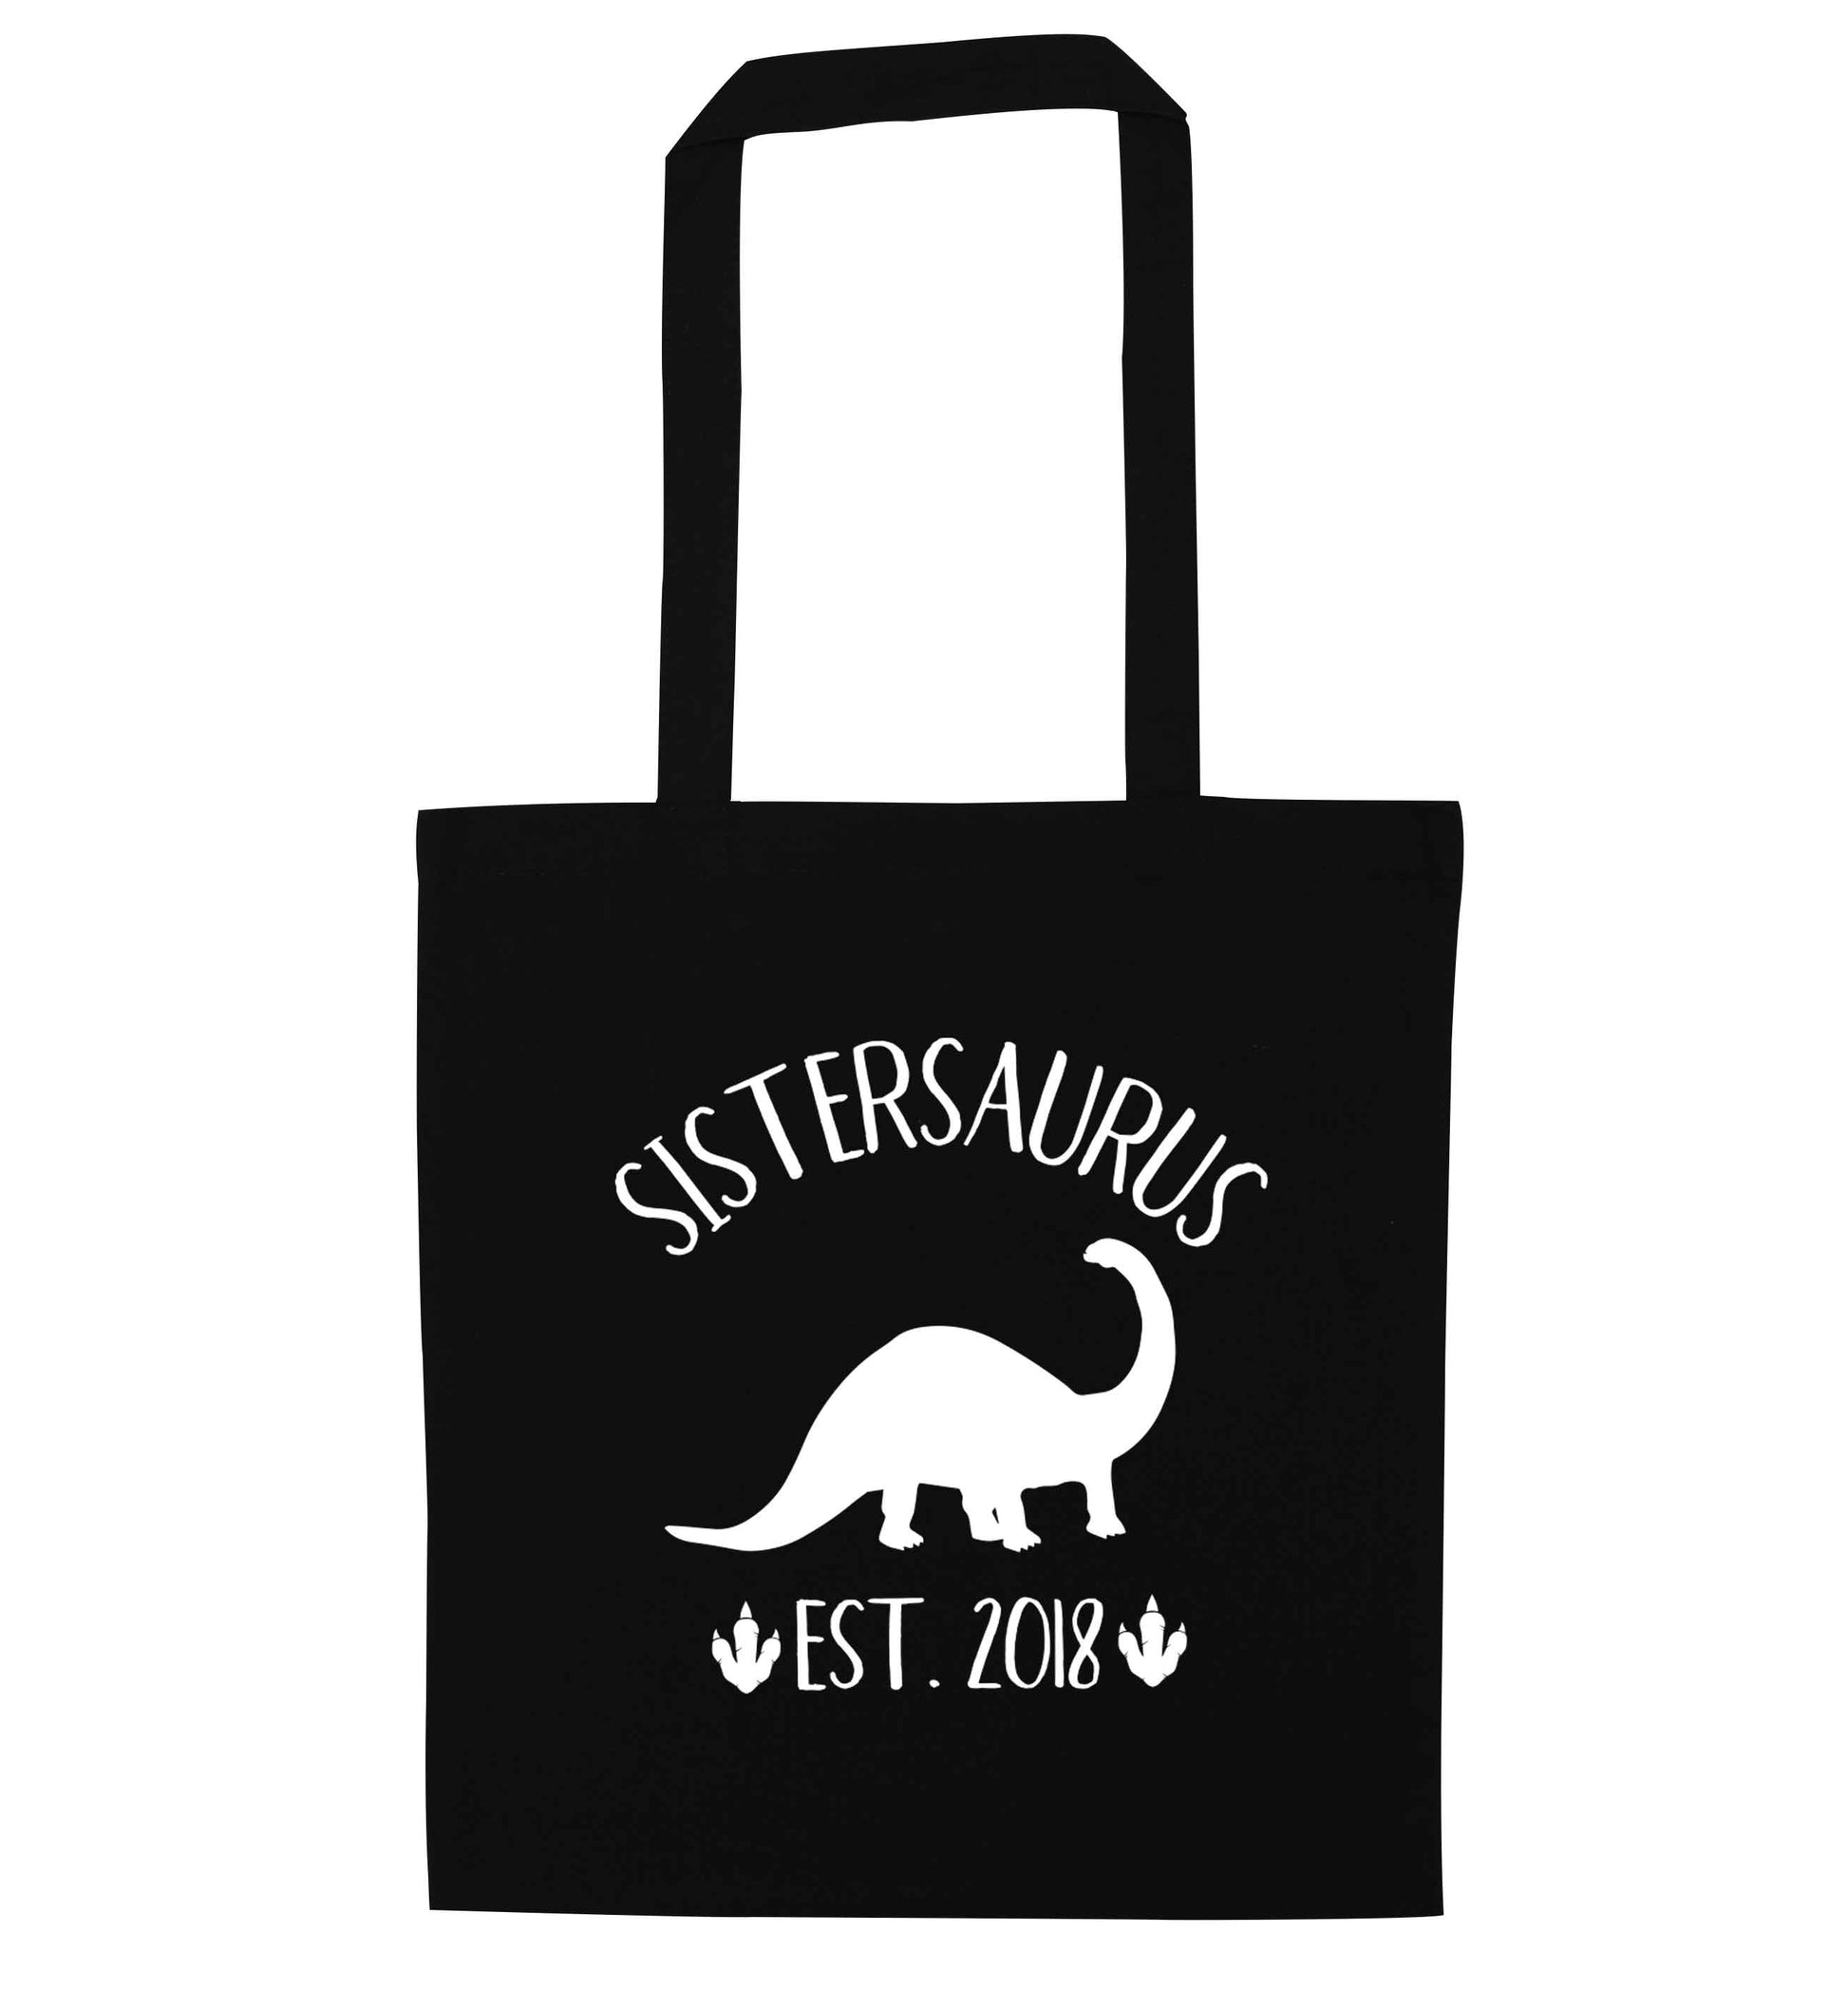 Personalised sistersaurus since (custom date) black tote bag